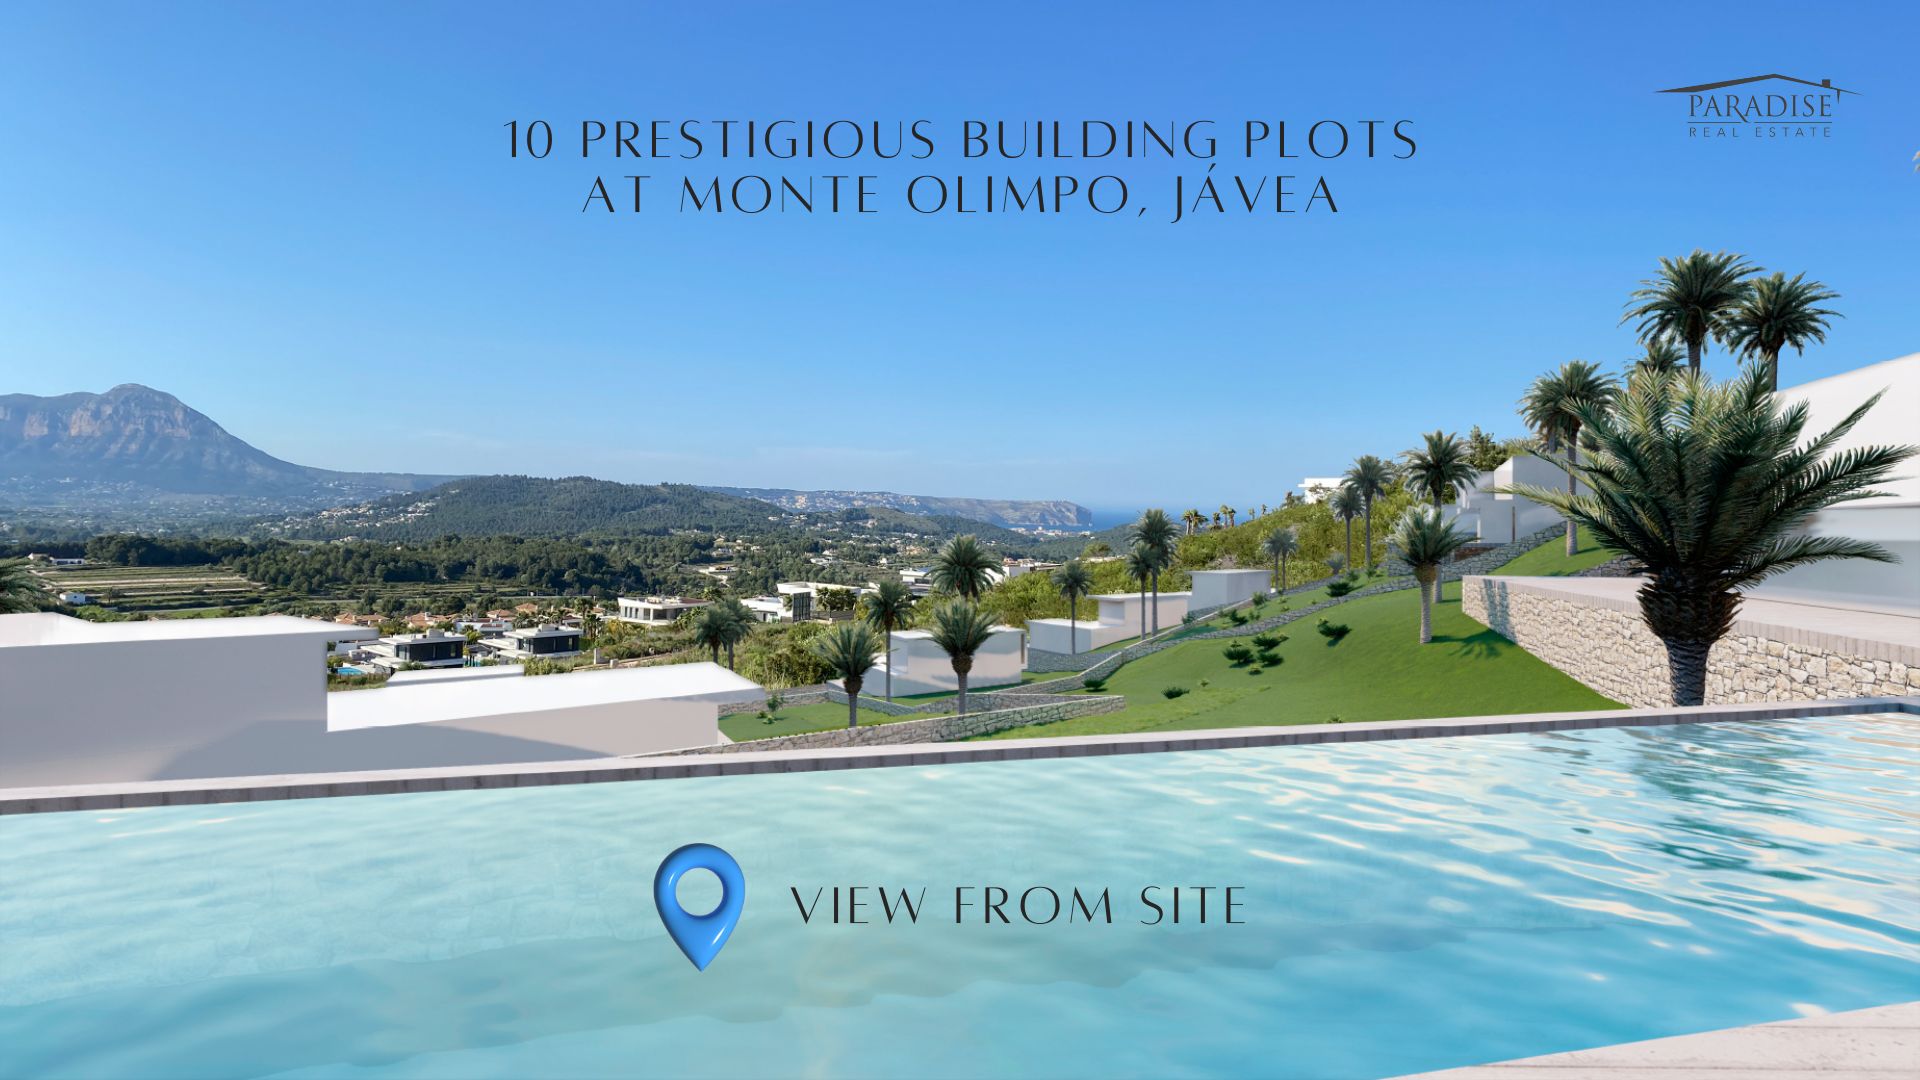 Monte Olimpo Byggnadstomter: Skräddarsy ditt drömhus och investera i exklusiva fastigheter 0Priser från €525k - €730